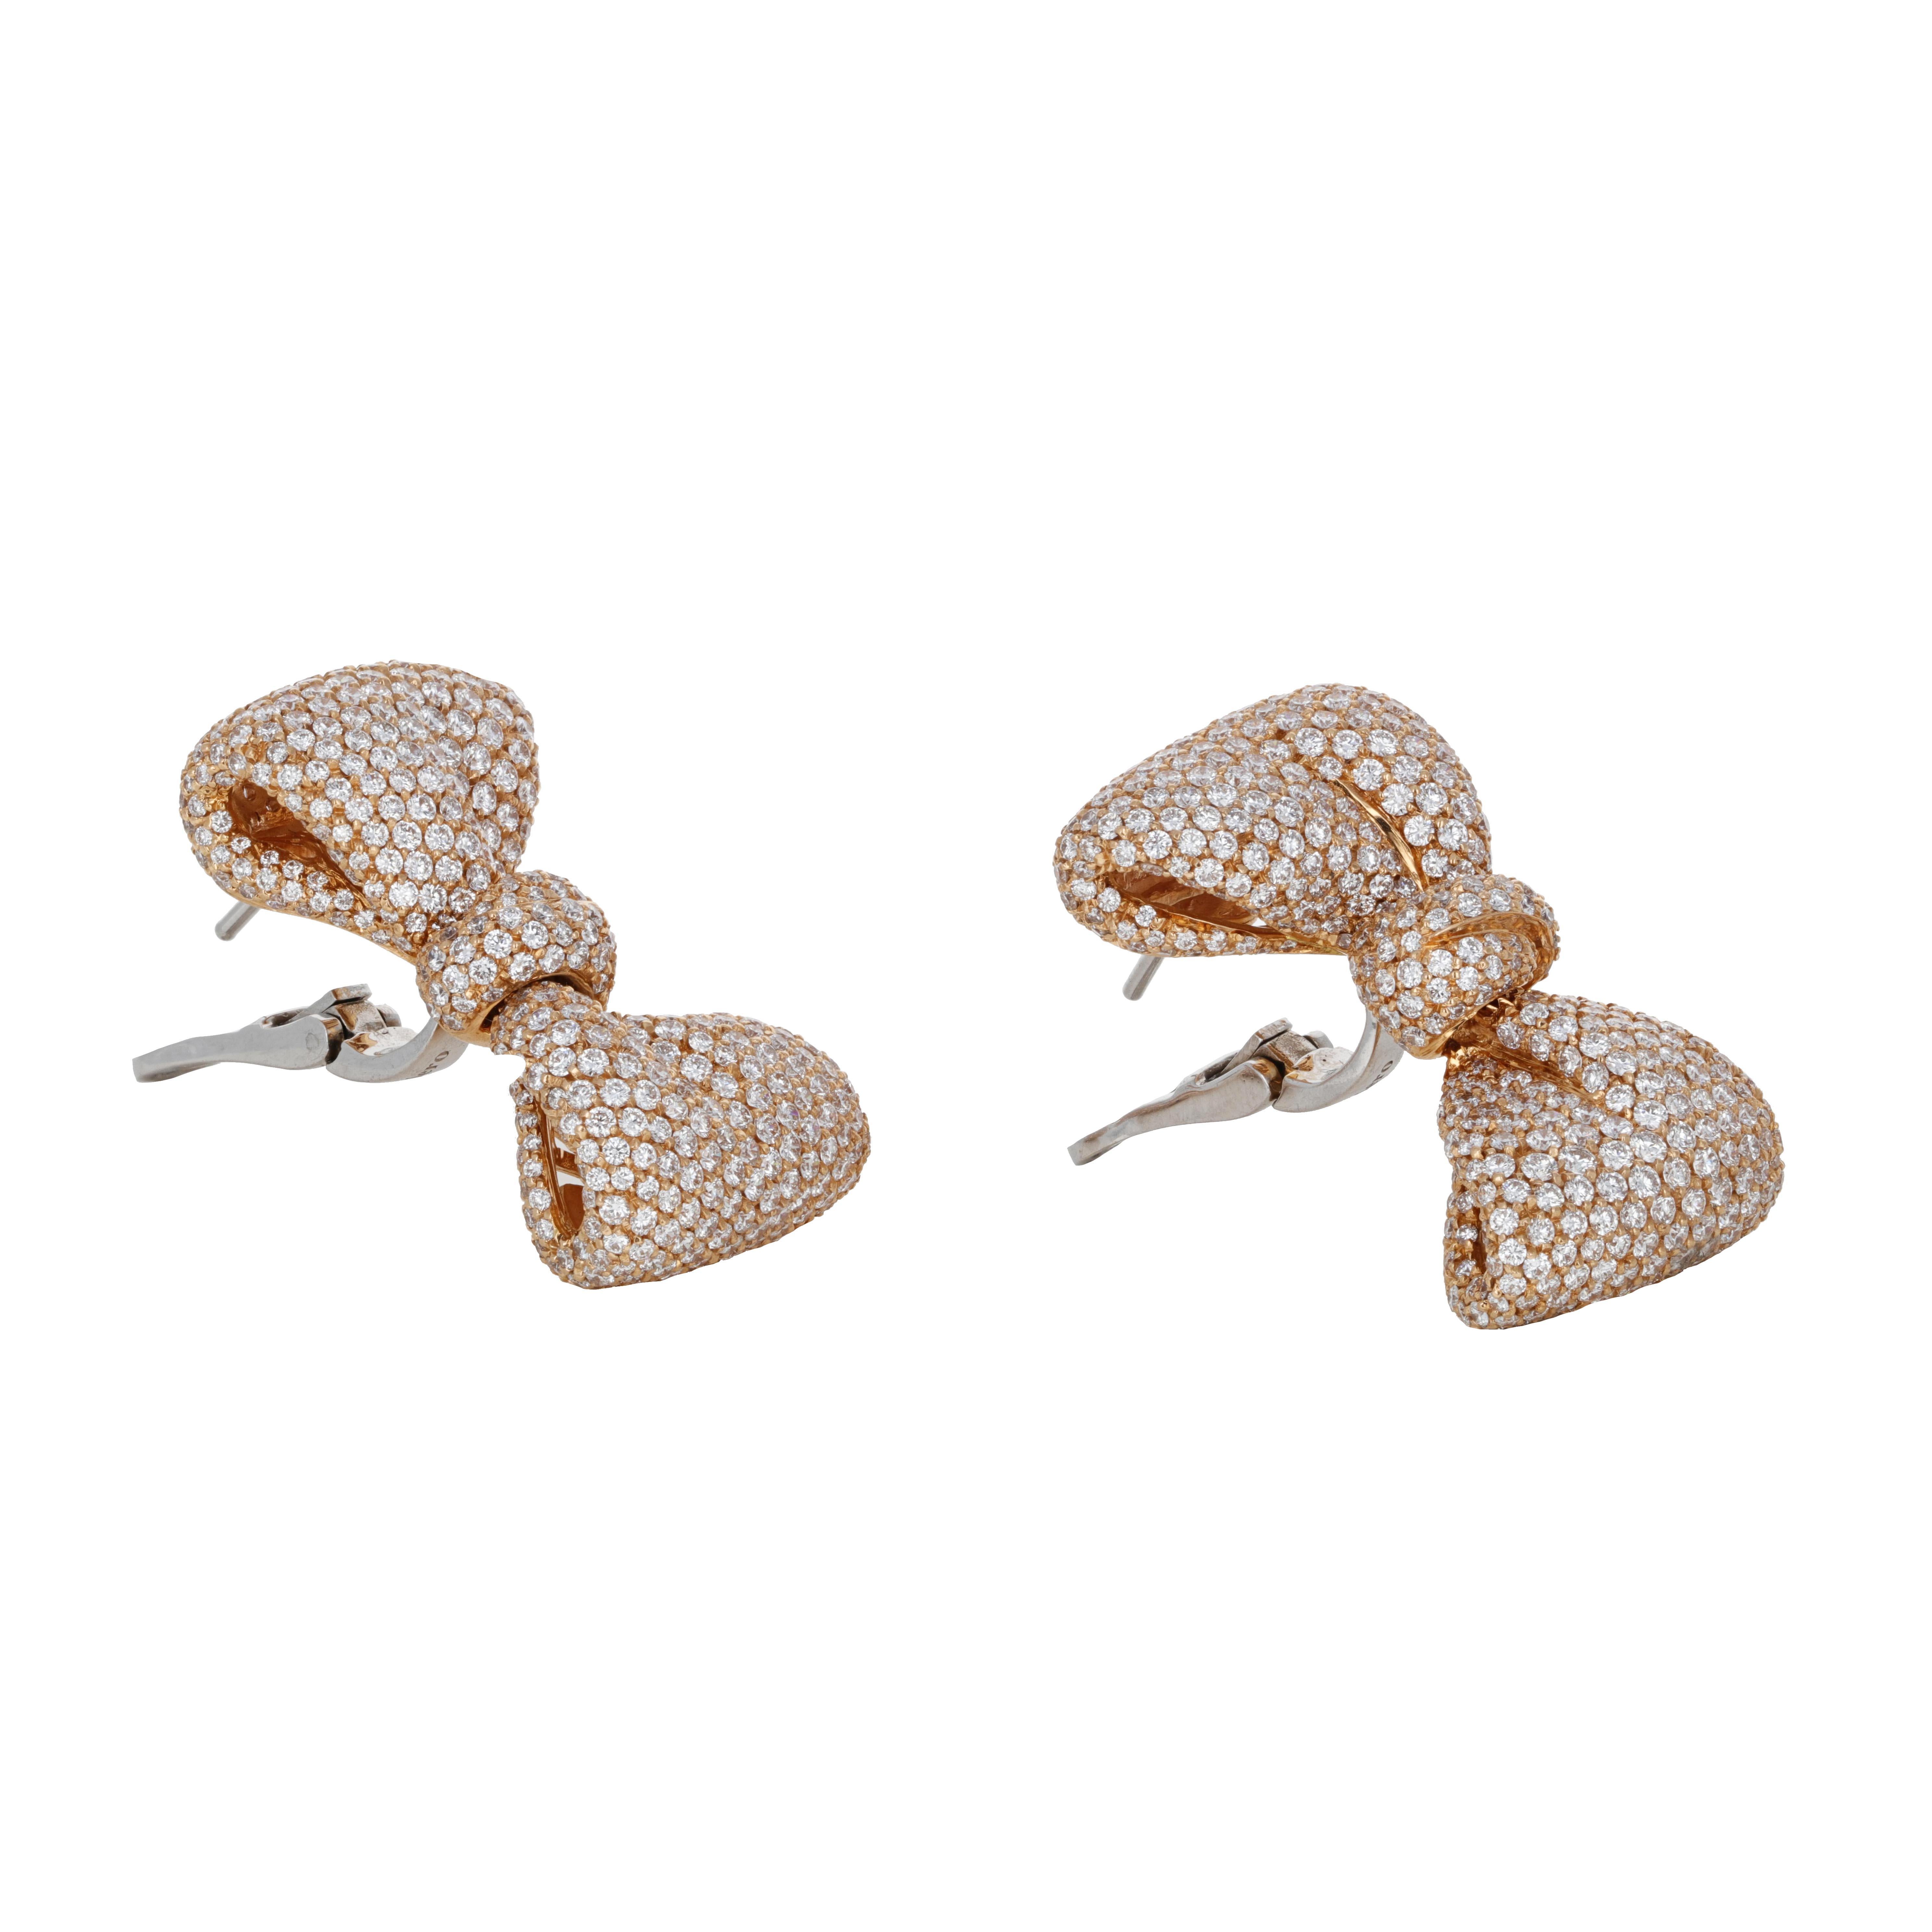 Ces boucles d'oreilles en or jaune 18 carats avec un nœud en diamant sont signées par le designer italien Palmiero. Ces boucles d'oreilles ont un dos à levier et tombent très joliment de l'oreille. 

Le poids total des diamants ronds et brillants